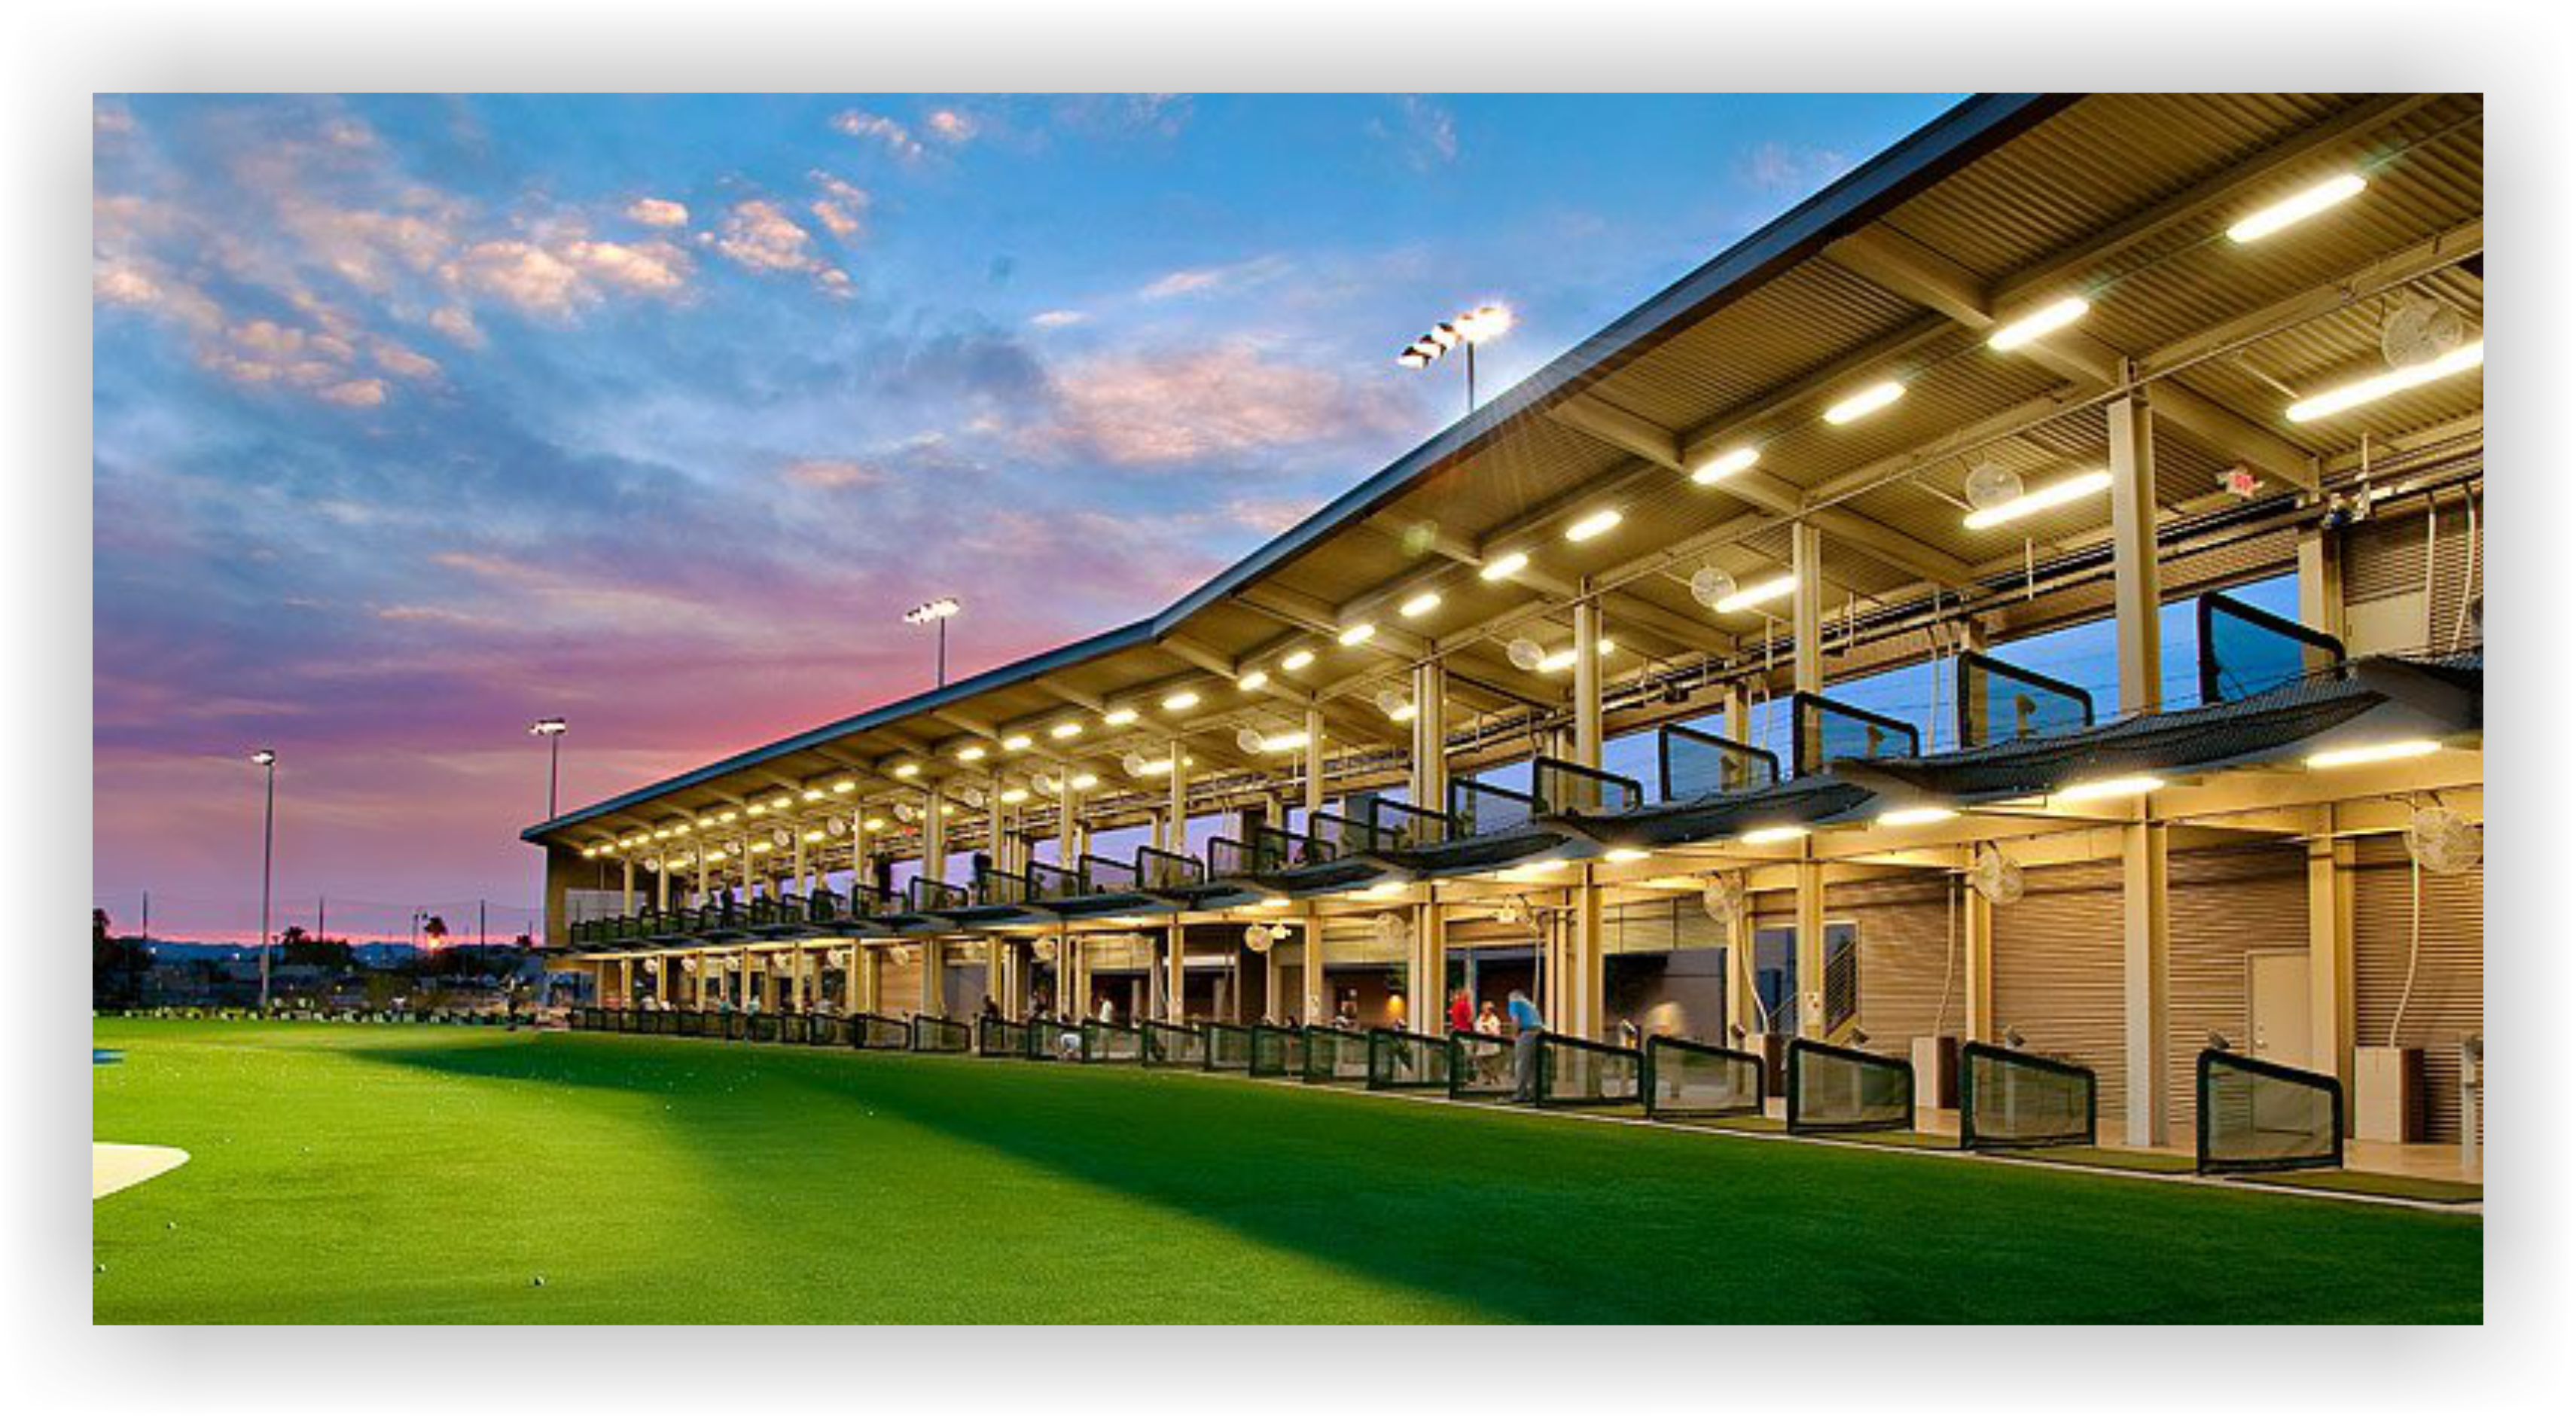 Valley Golf Center